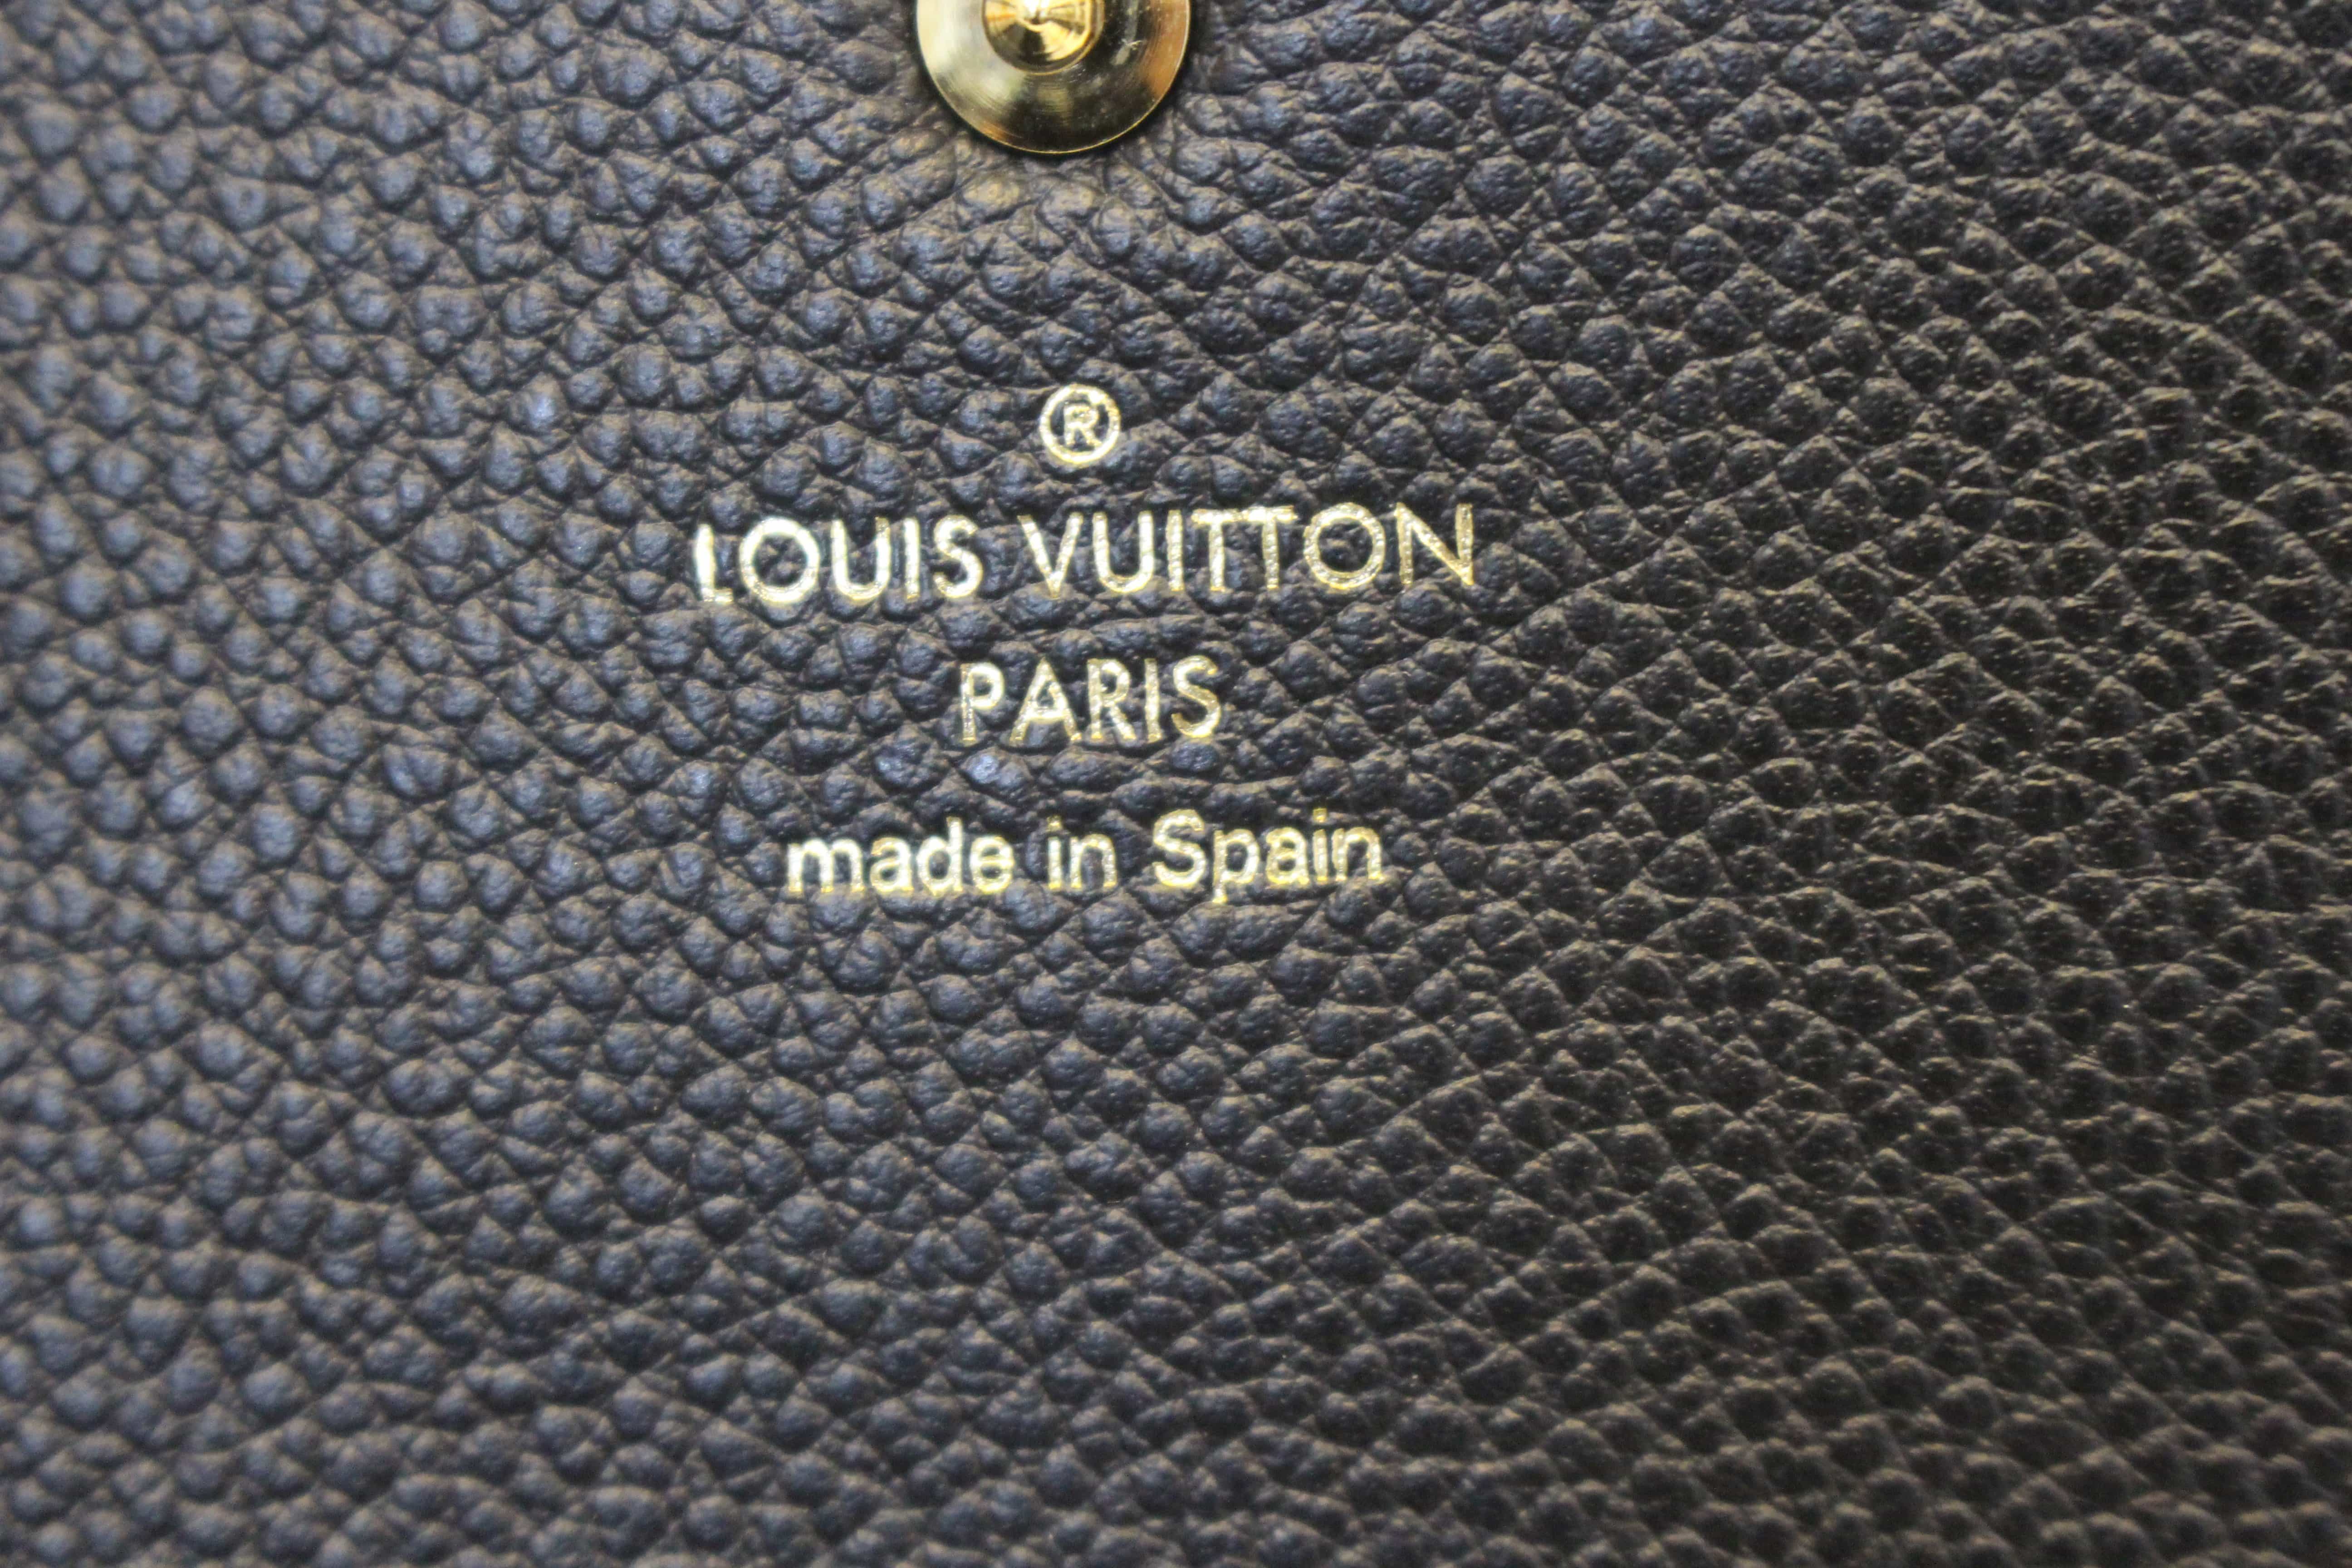 Louis Vuitton Compact Curieuse Wallet Vermillion Red Empreinte Leather  Wallet